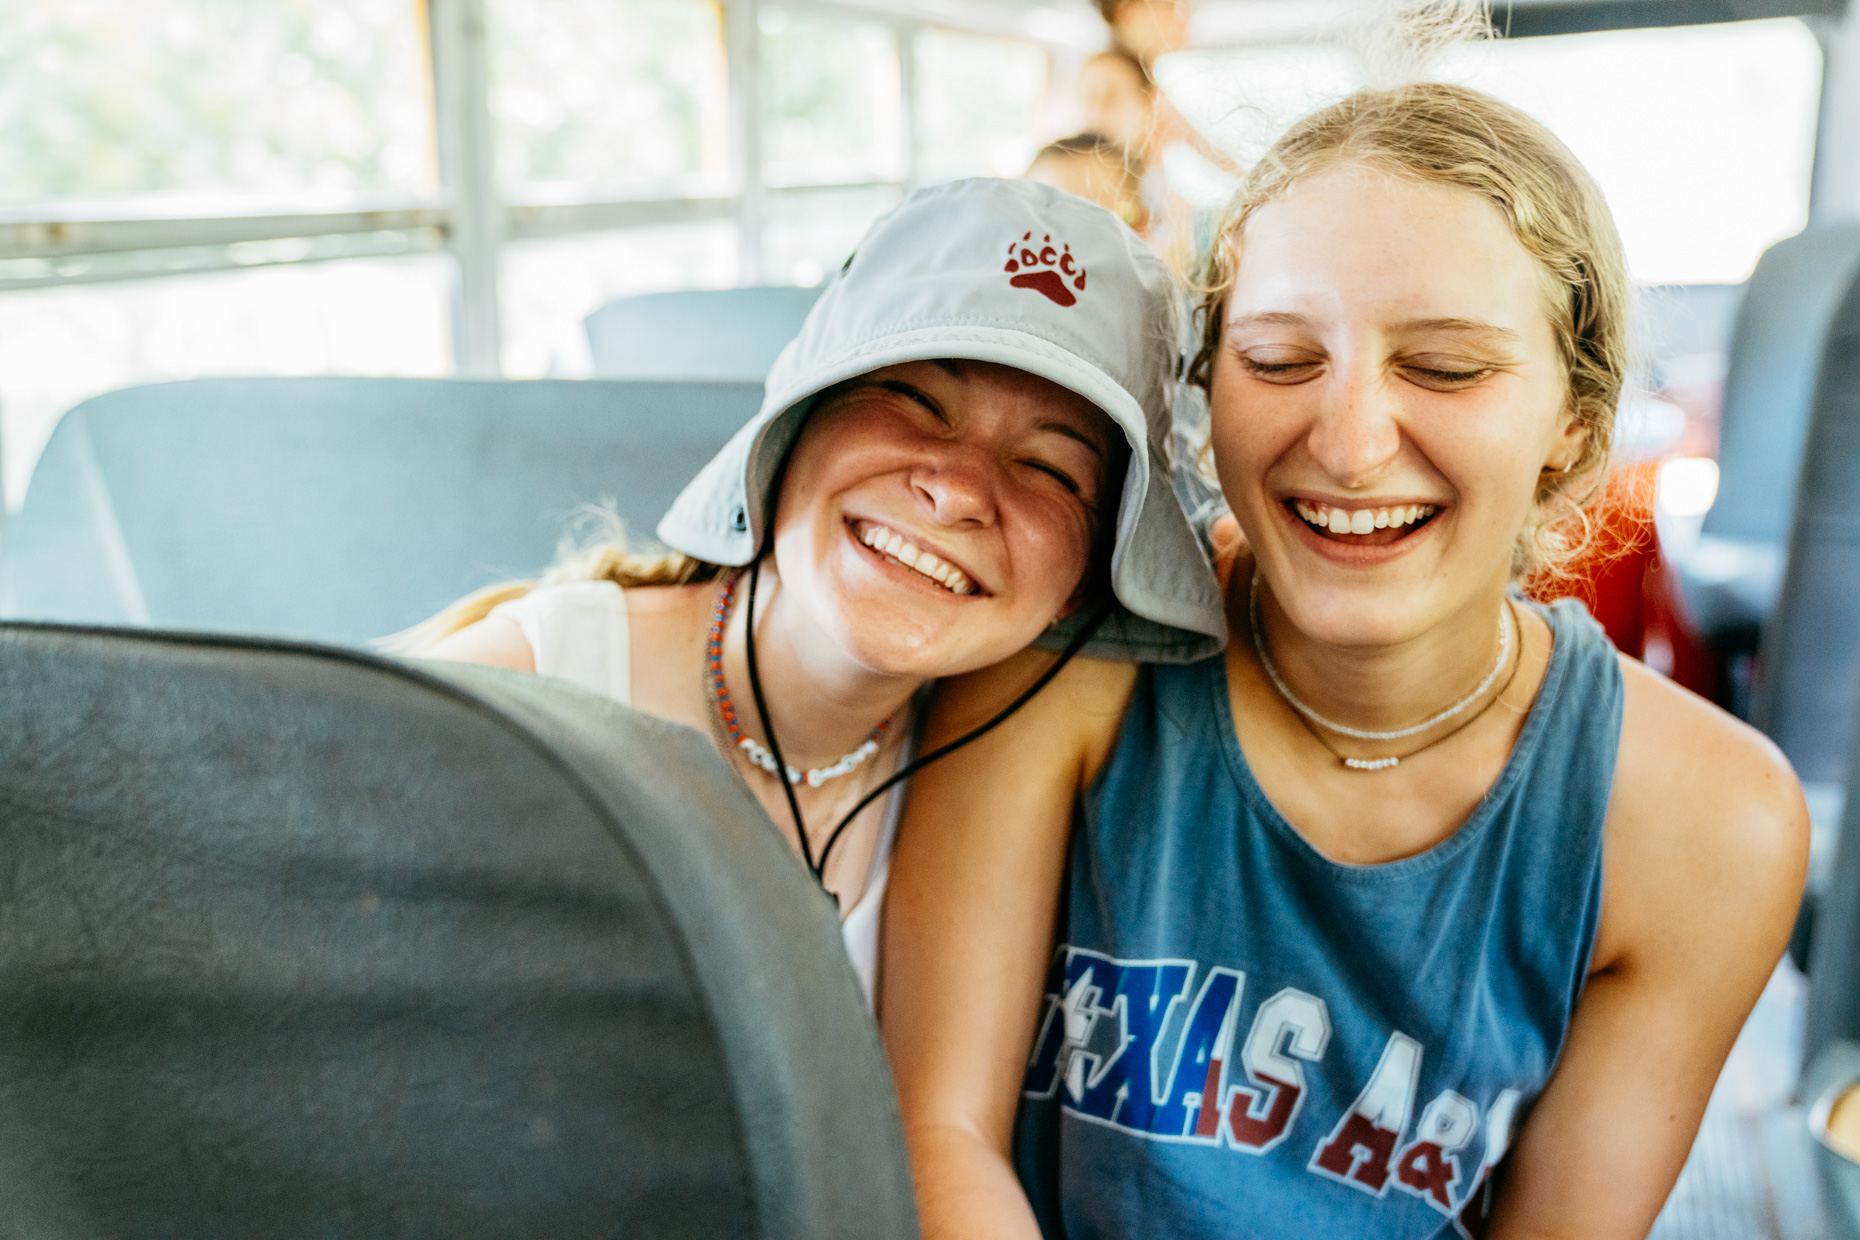 Teen-girl-campers-smiling-on-bus-is20210716_Deer_Creek_8690